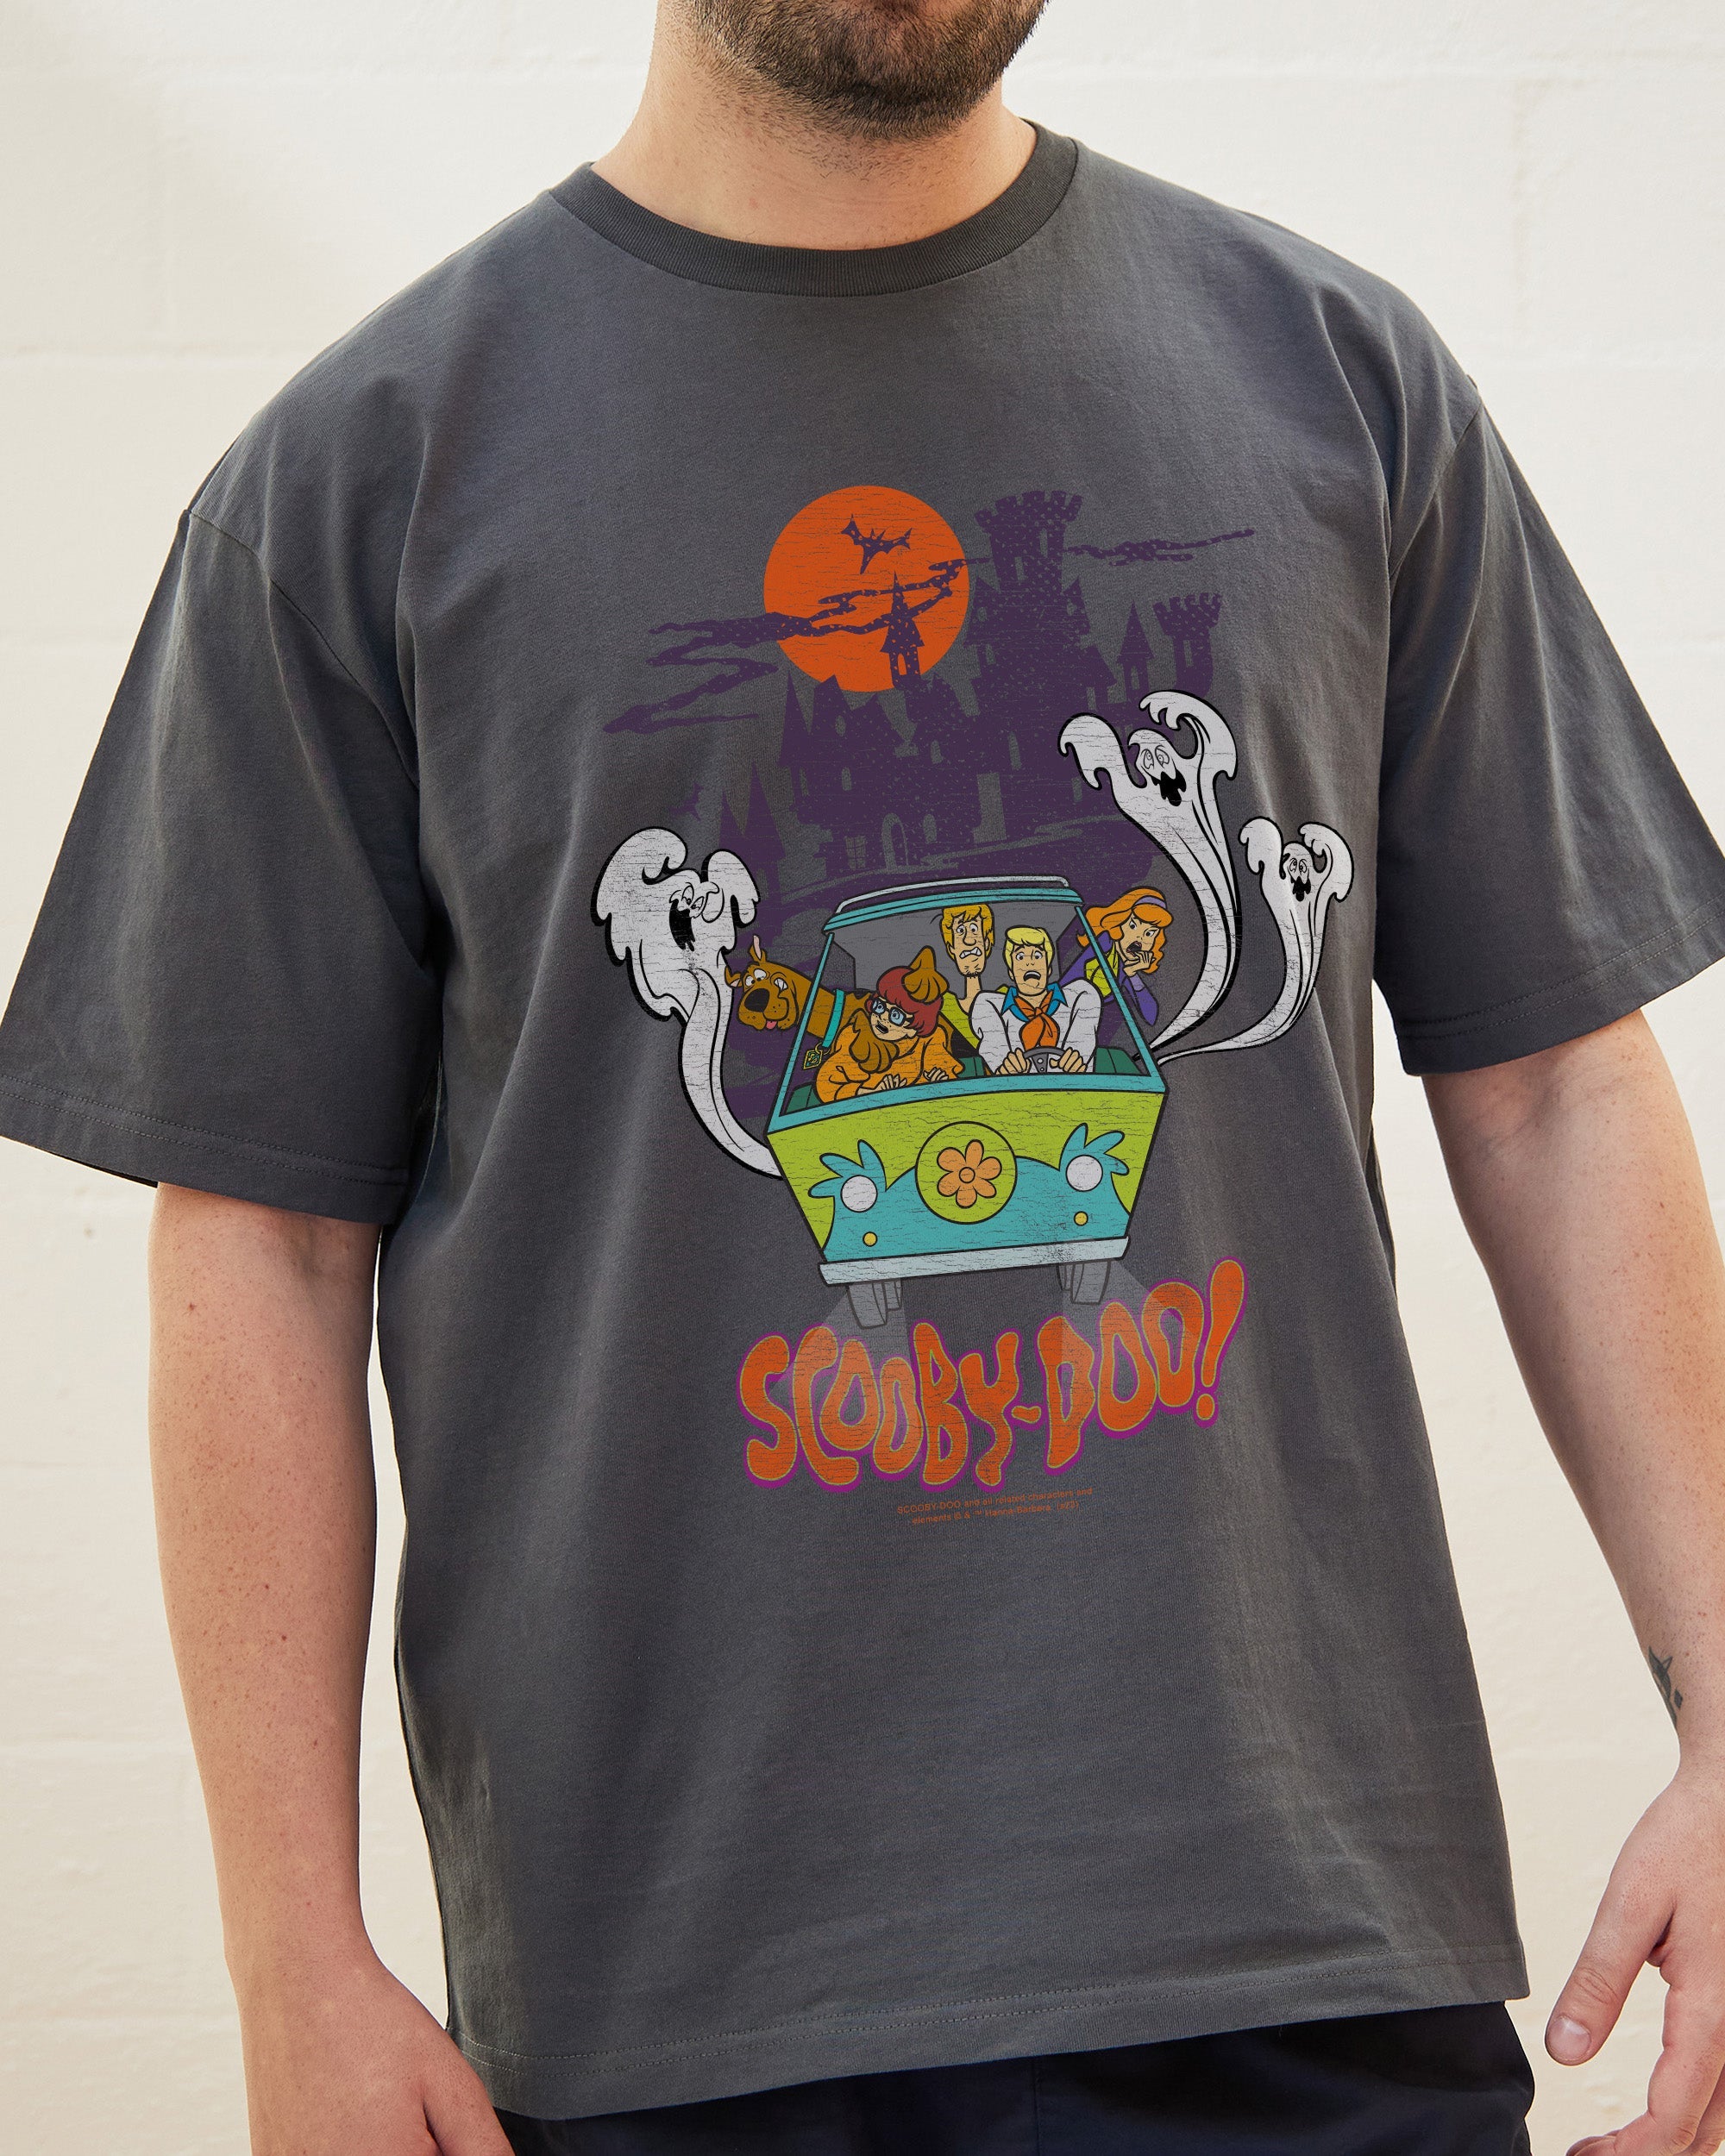 Scooby-Doo T-Shirt Australia Online Coal